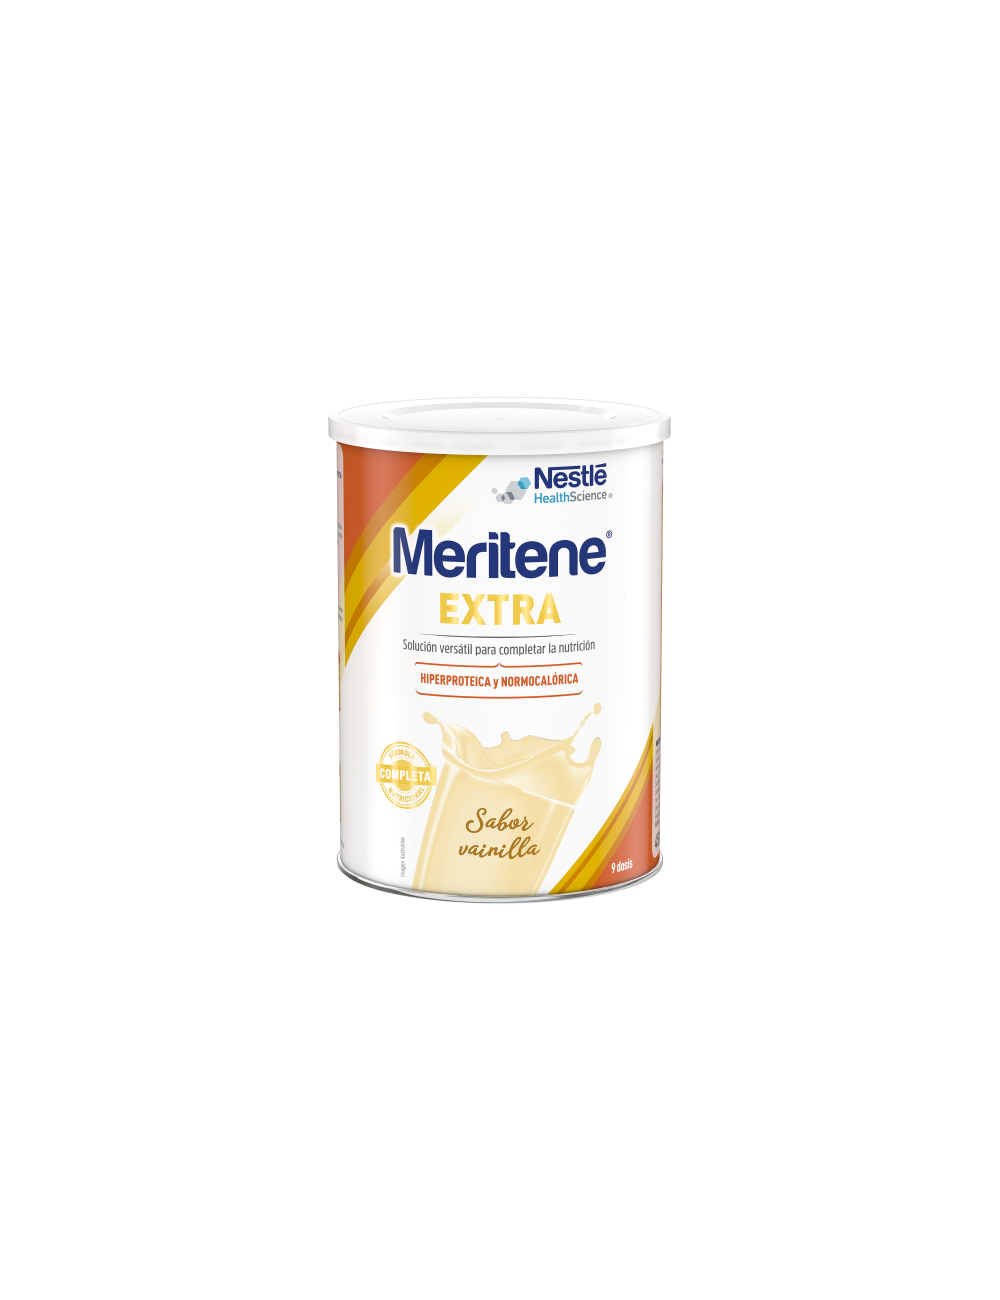 meritene-extra-vainilla-450g